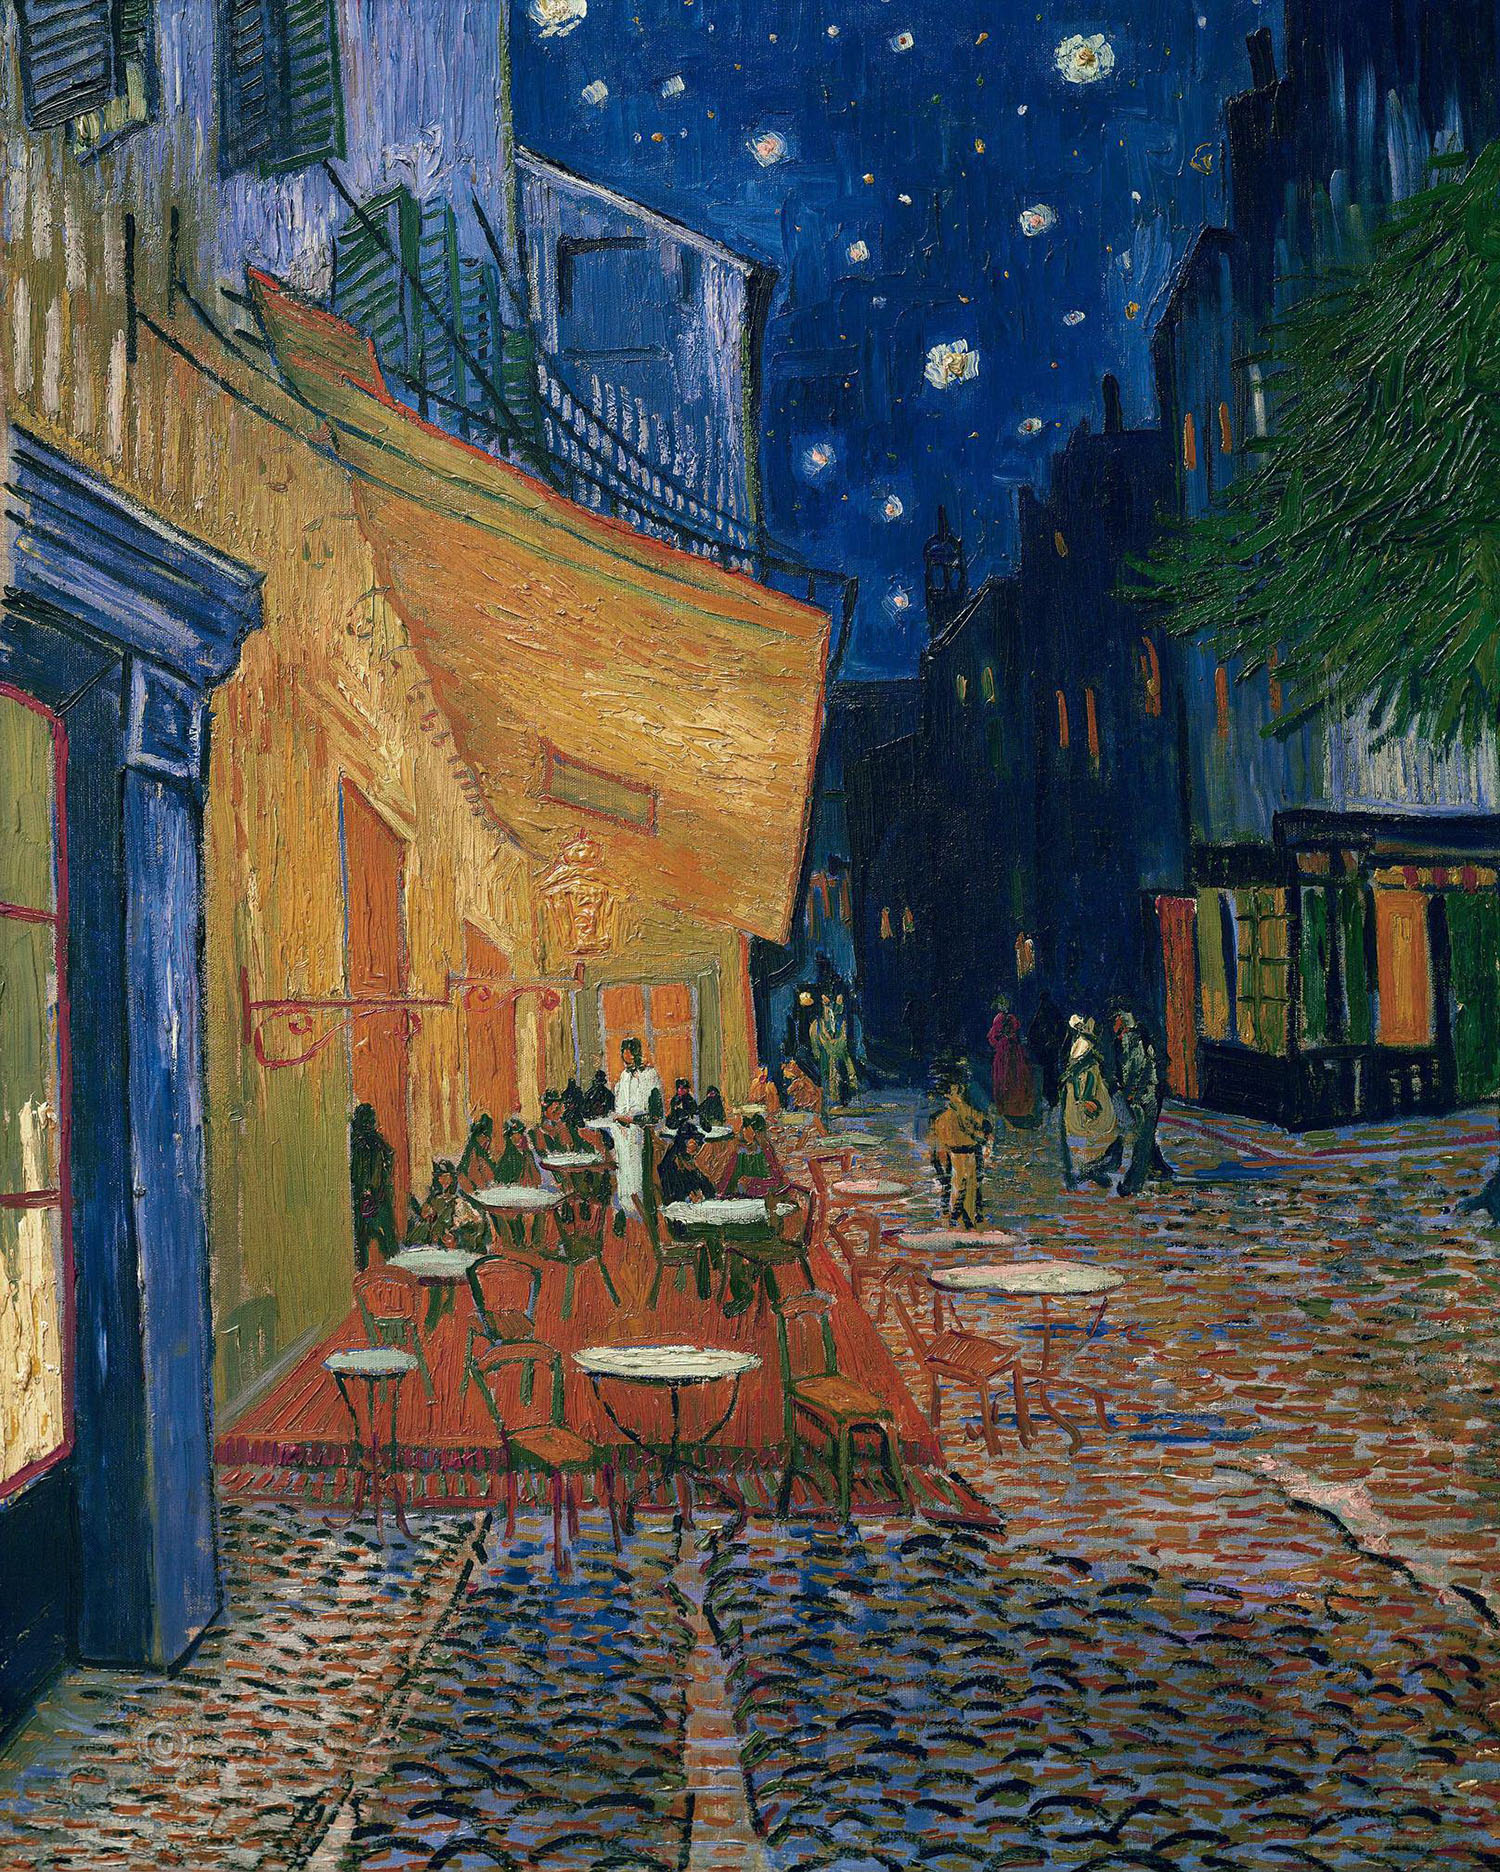 Винсент Ван Гог. "Ночное кафе в Арле". 1888.